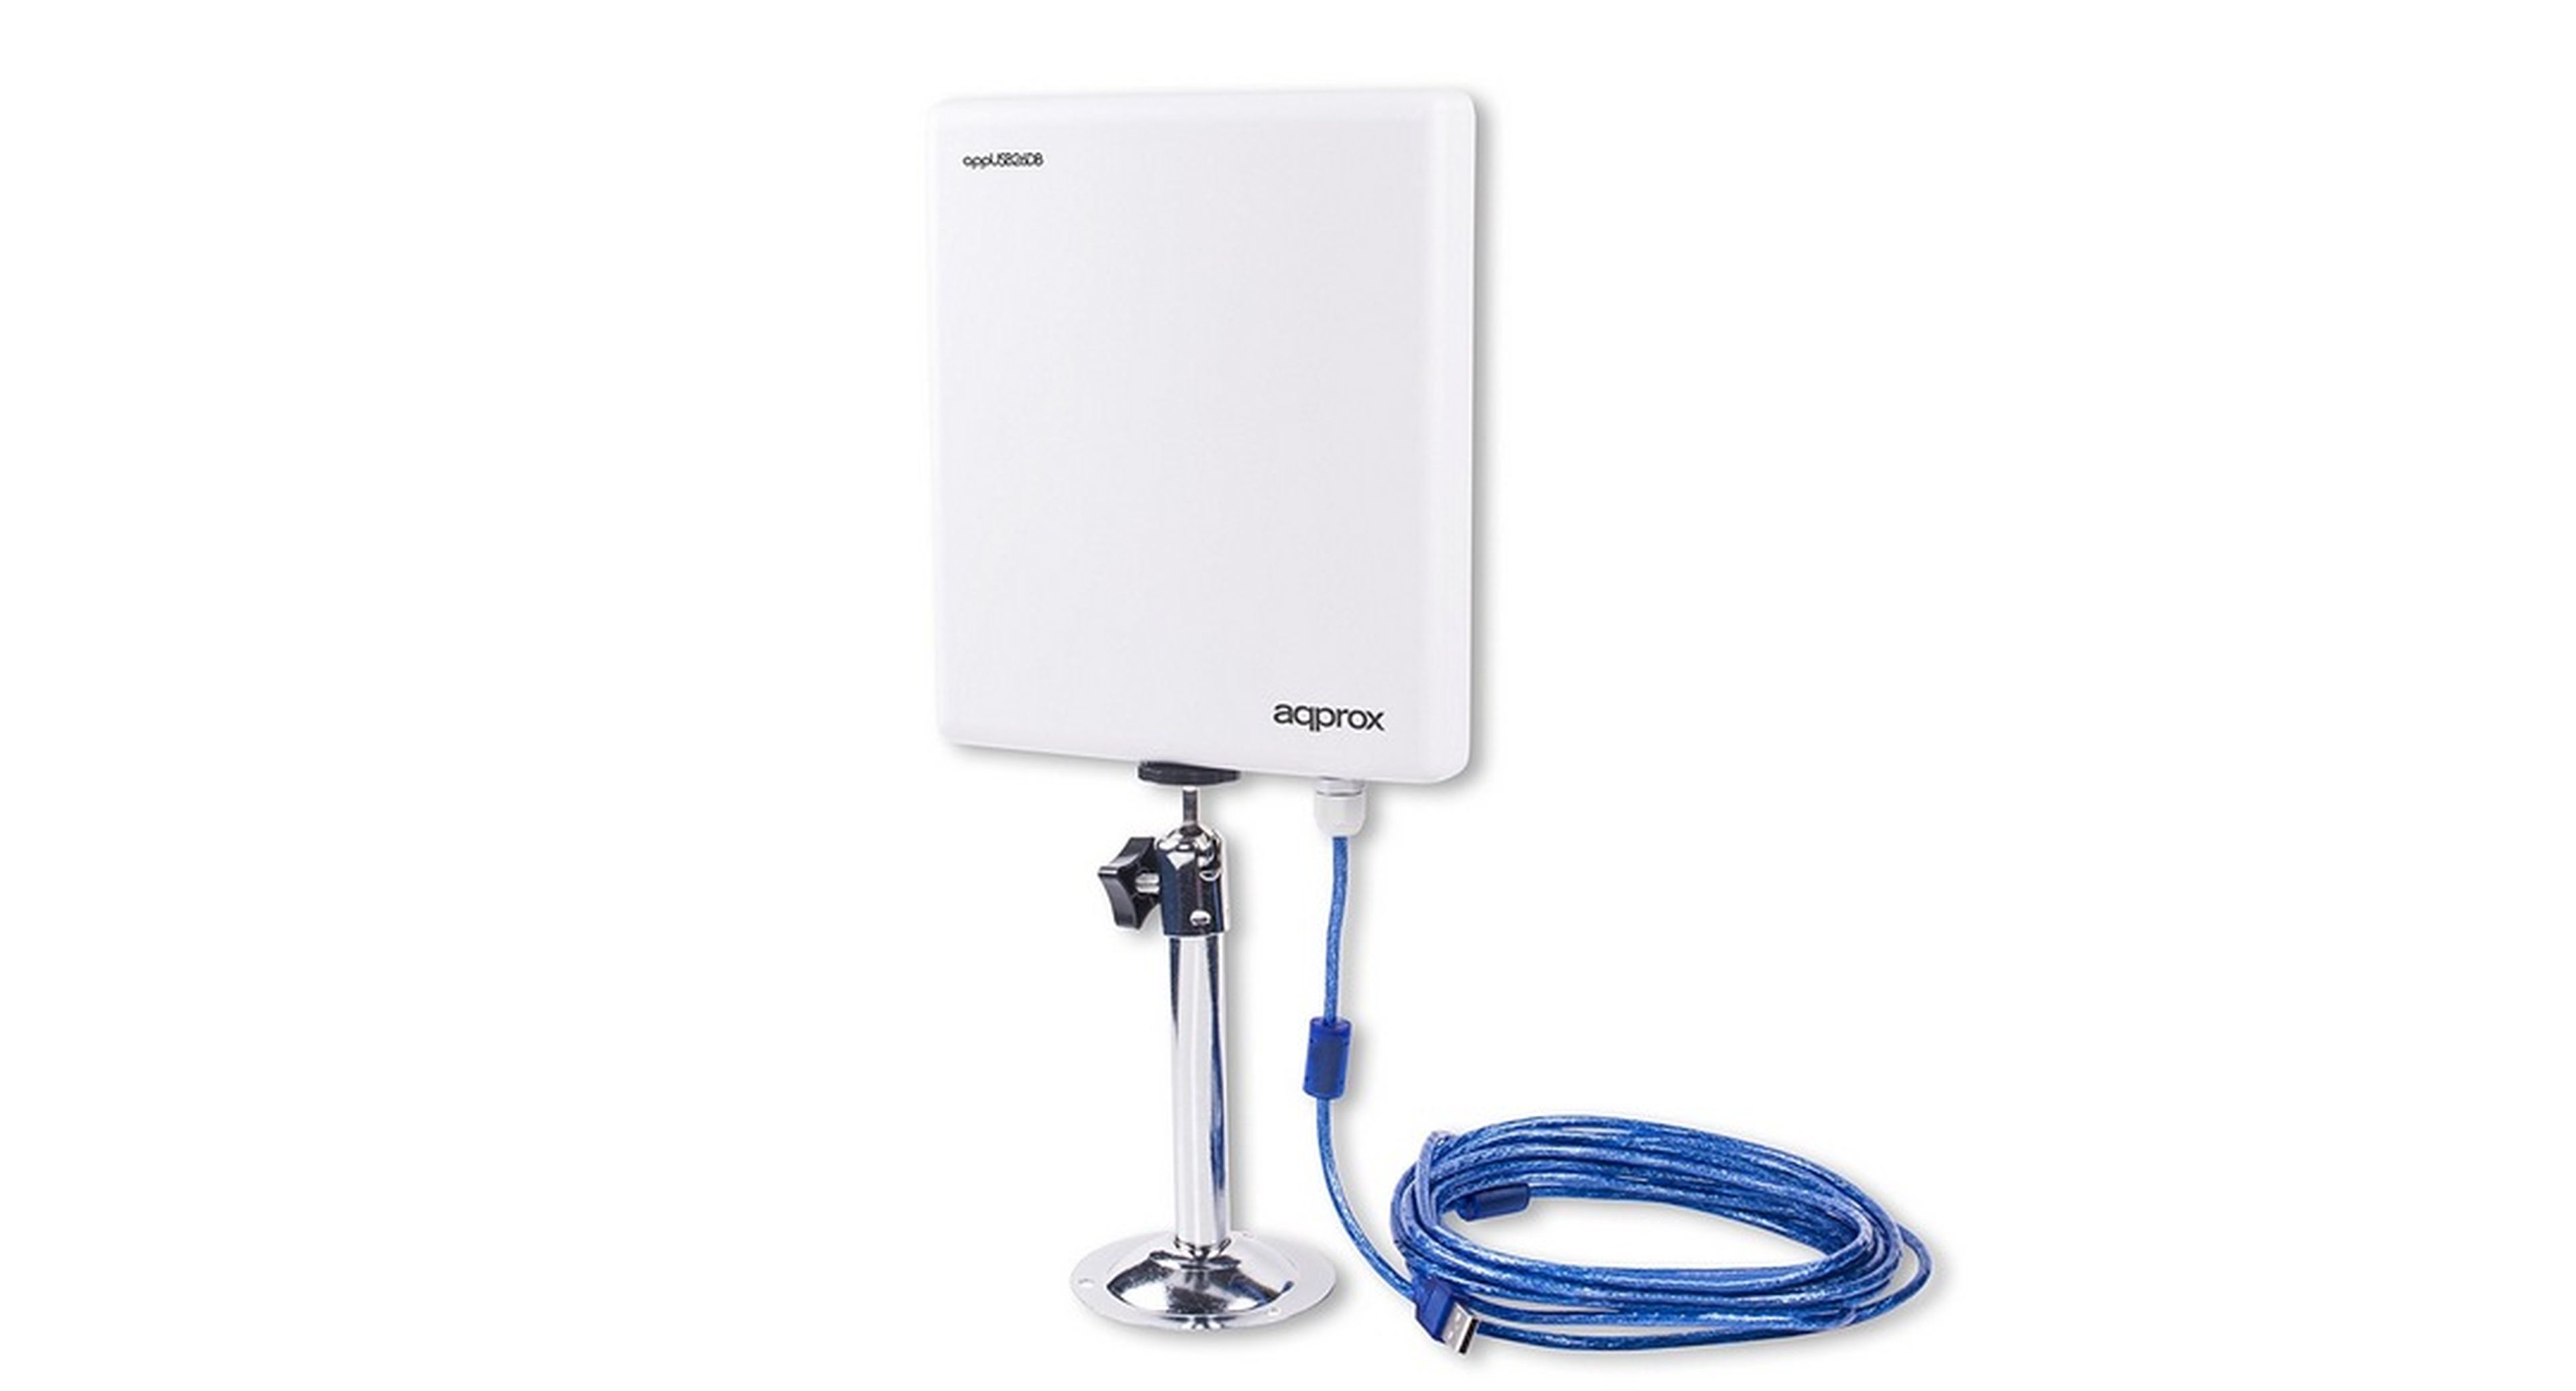 Los mejores routers compatibles con una antena WiFi por USB que puedes comprar